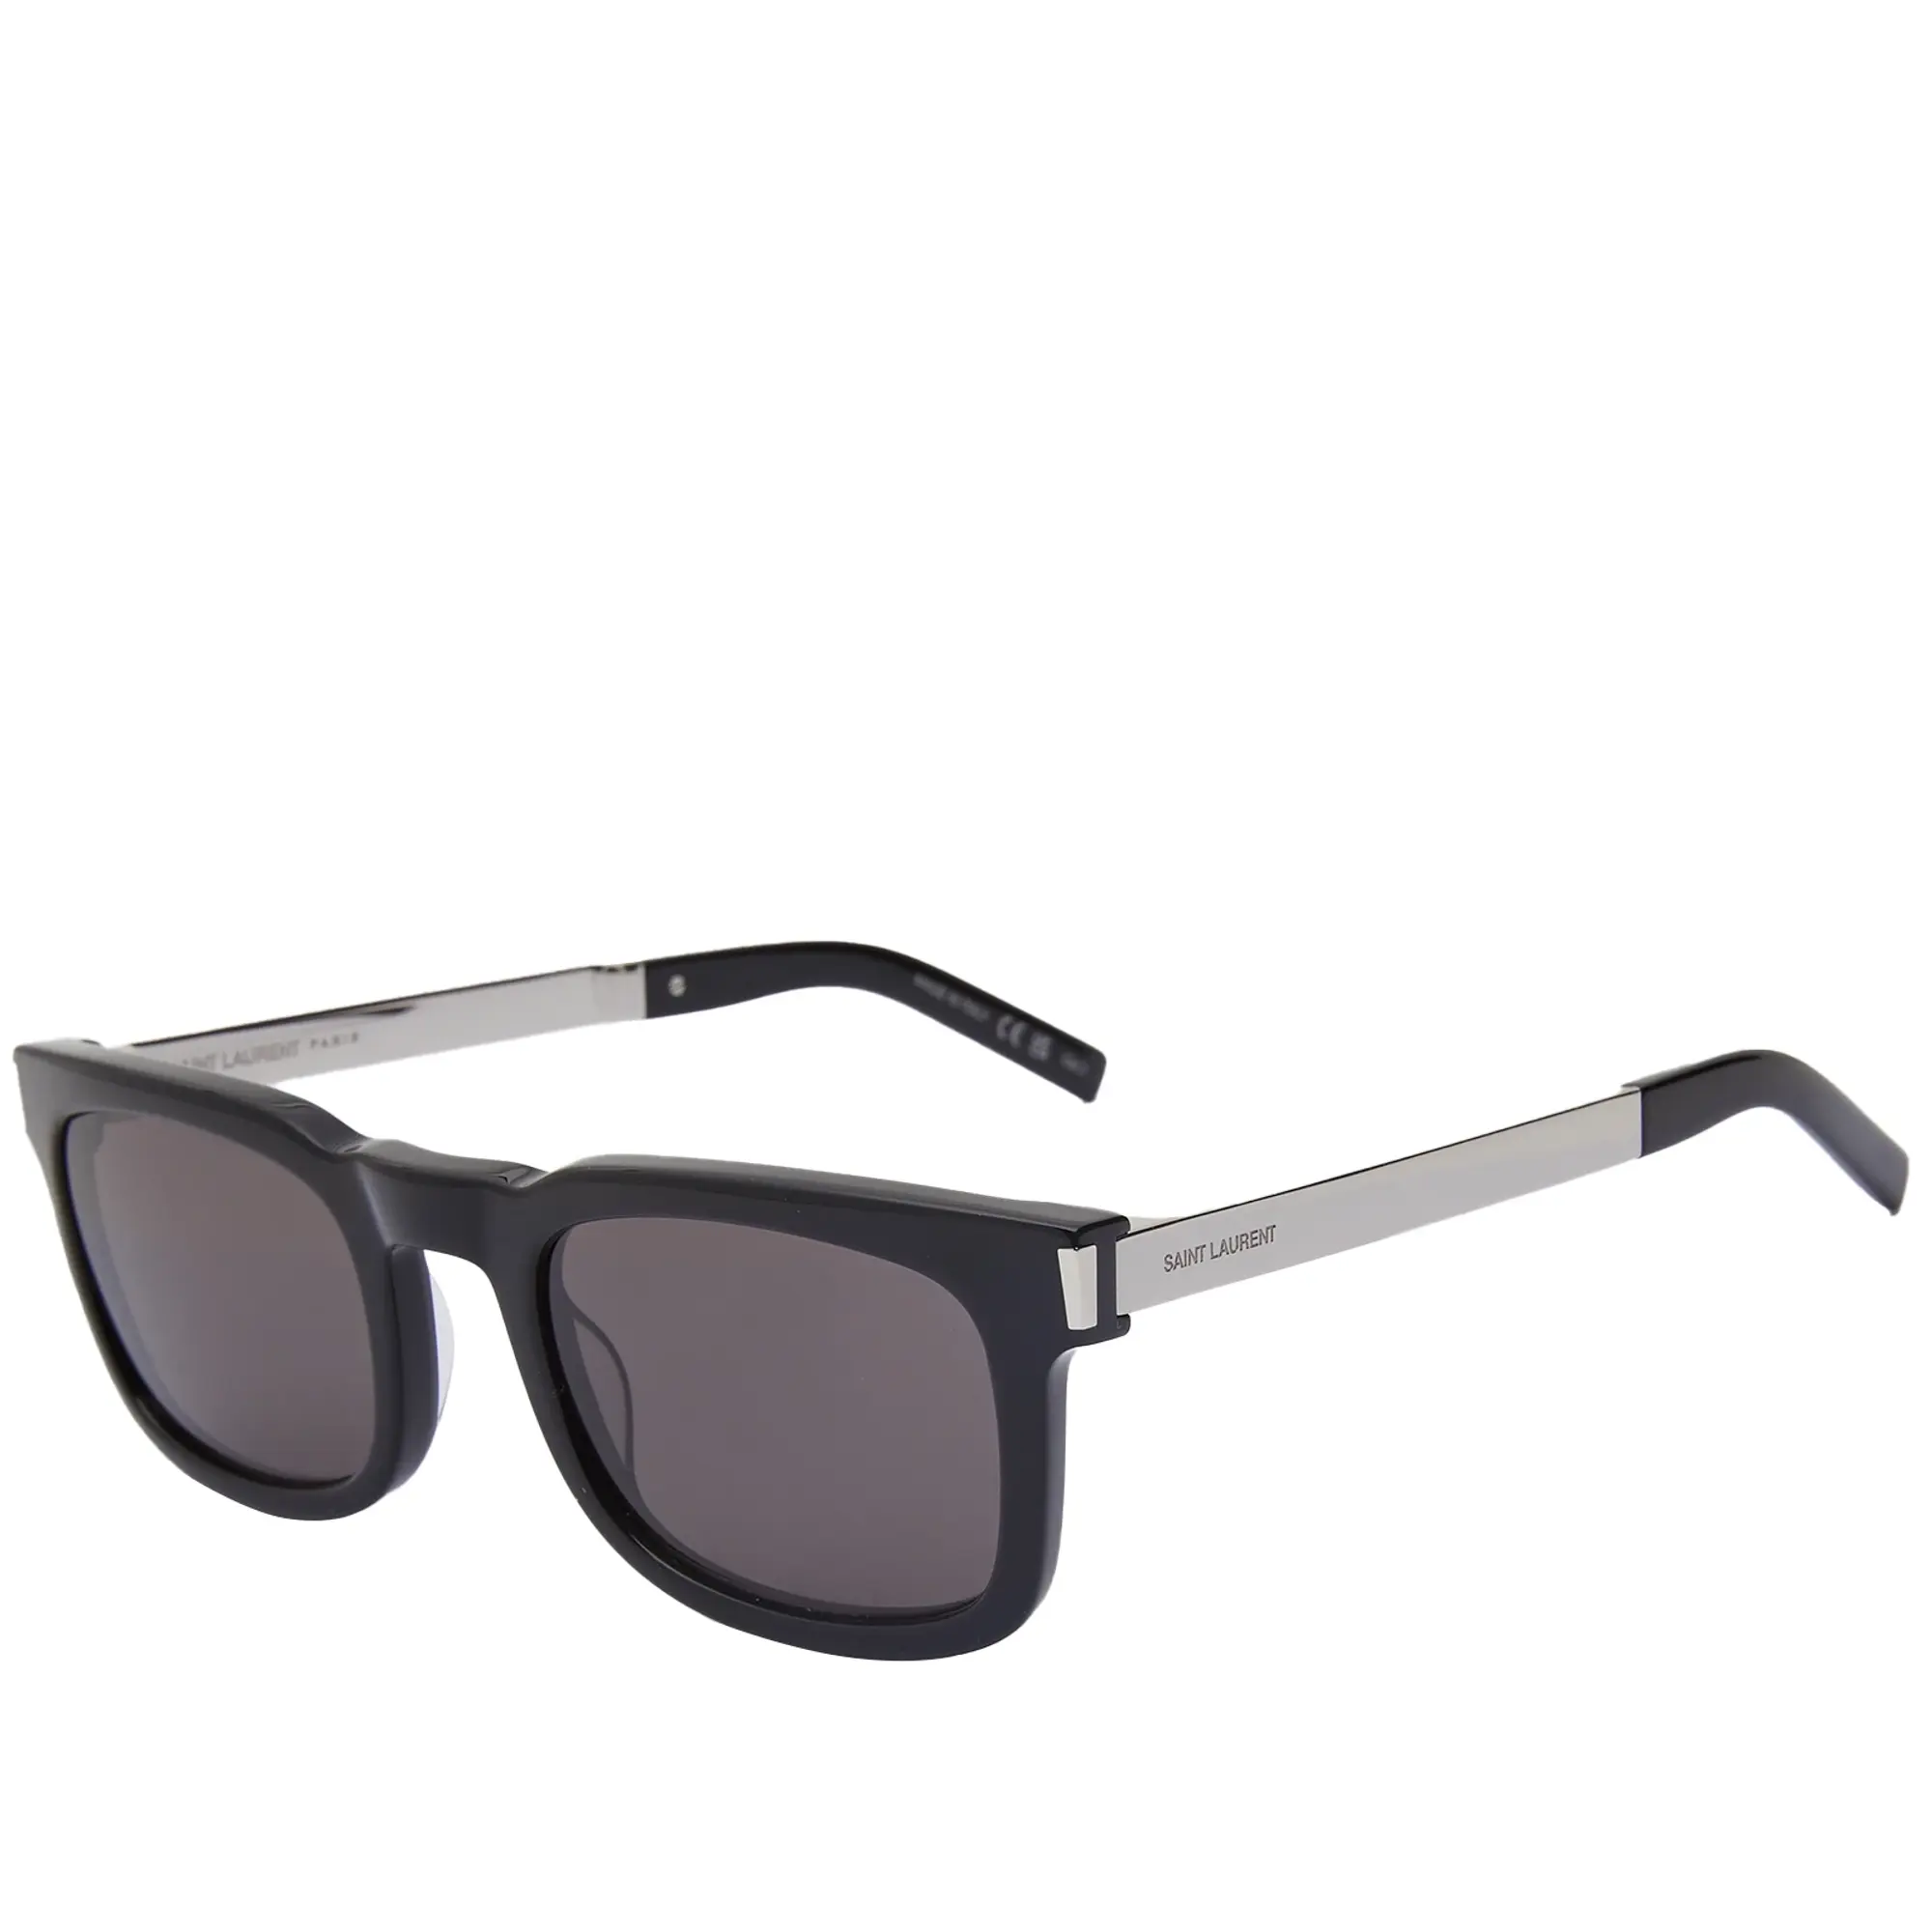 Saint Laurent Sunglasses Saint Laurent SL 581 Sunglasses Black/Silver